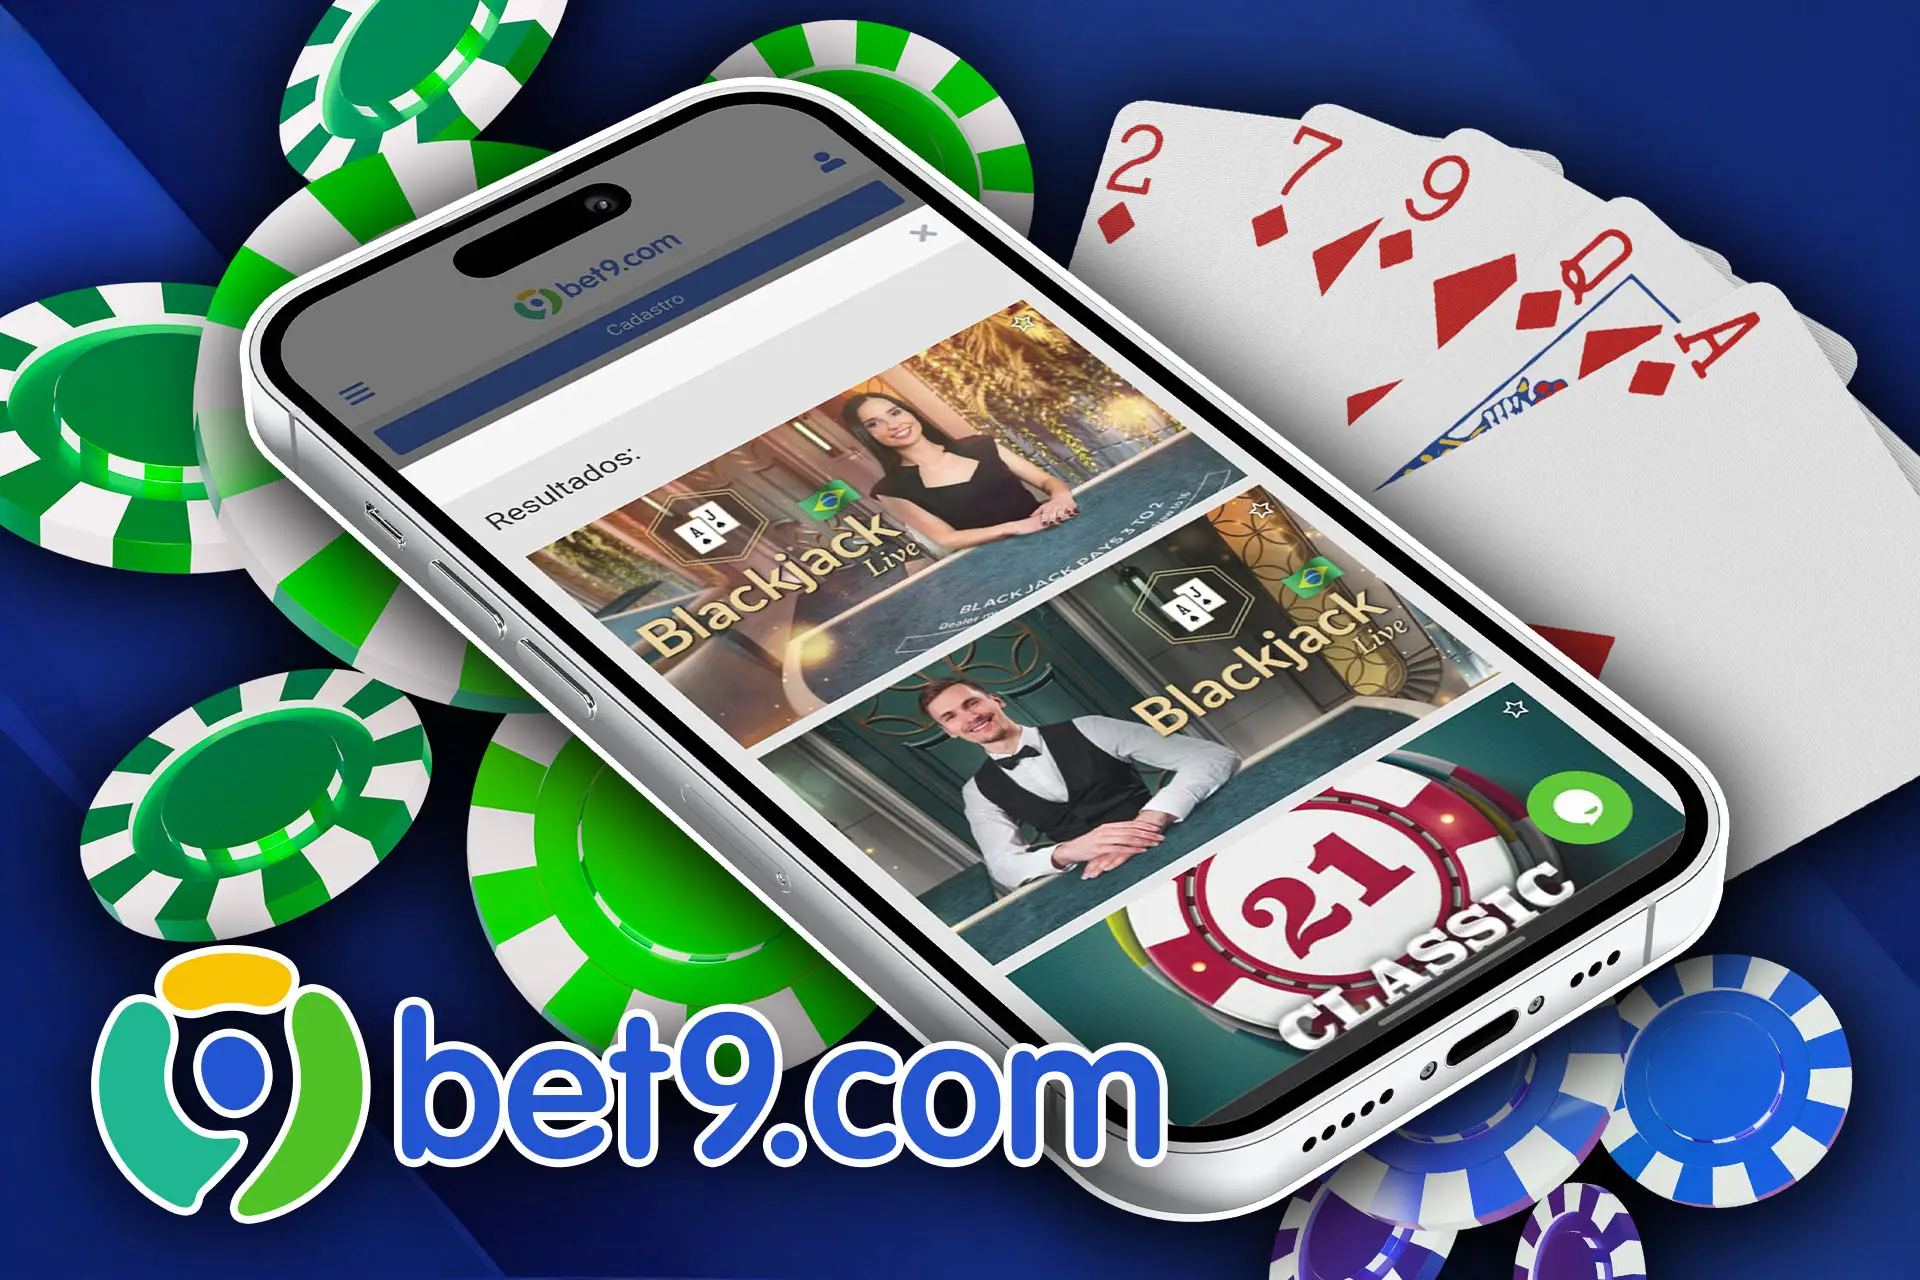 Você pode instalar o aplicativo Bet9 e jogar blackjack pelo seu smartphone.